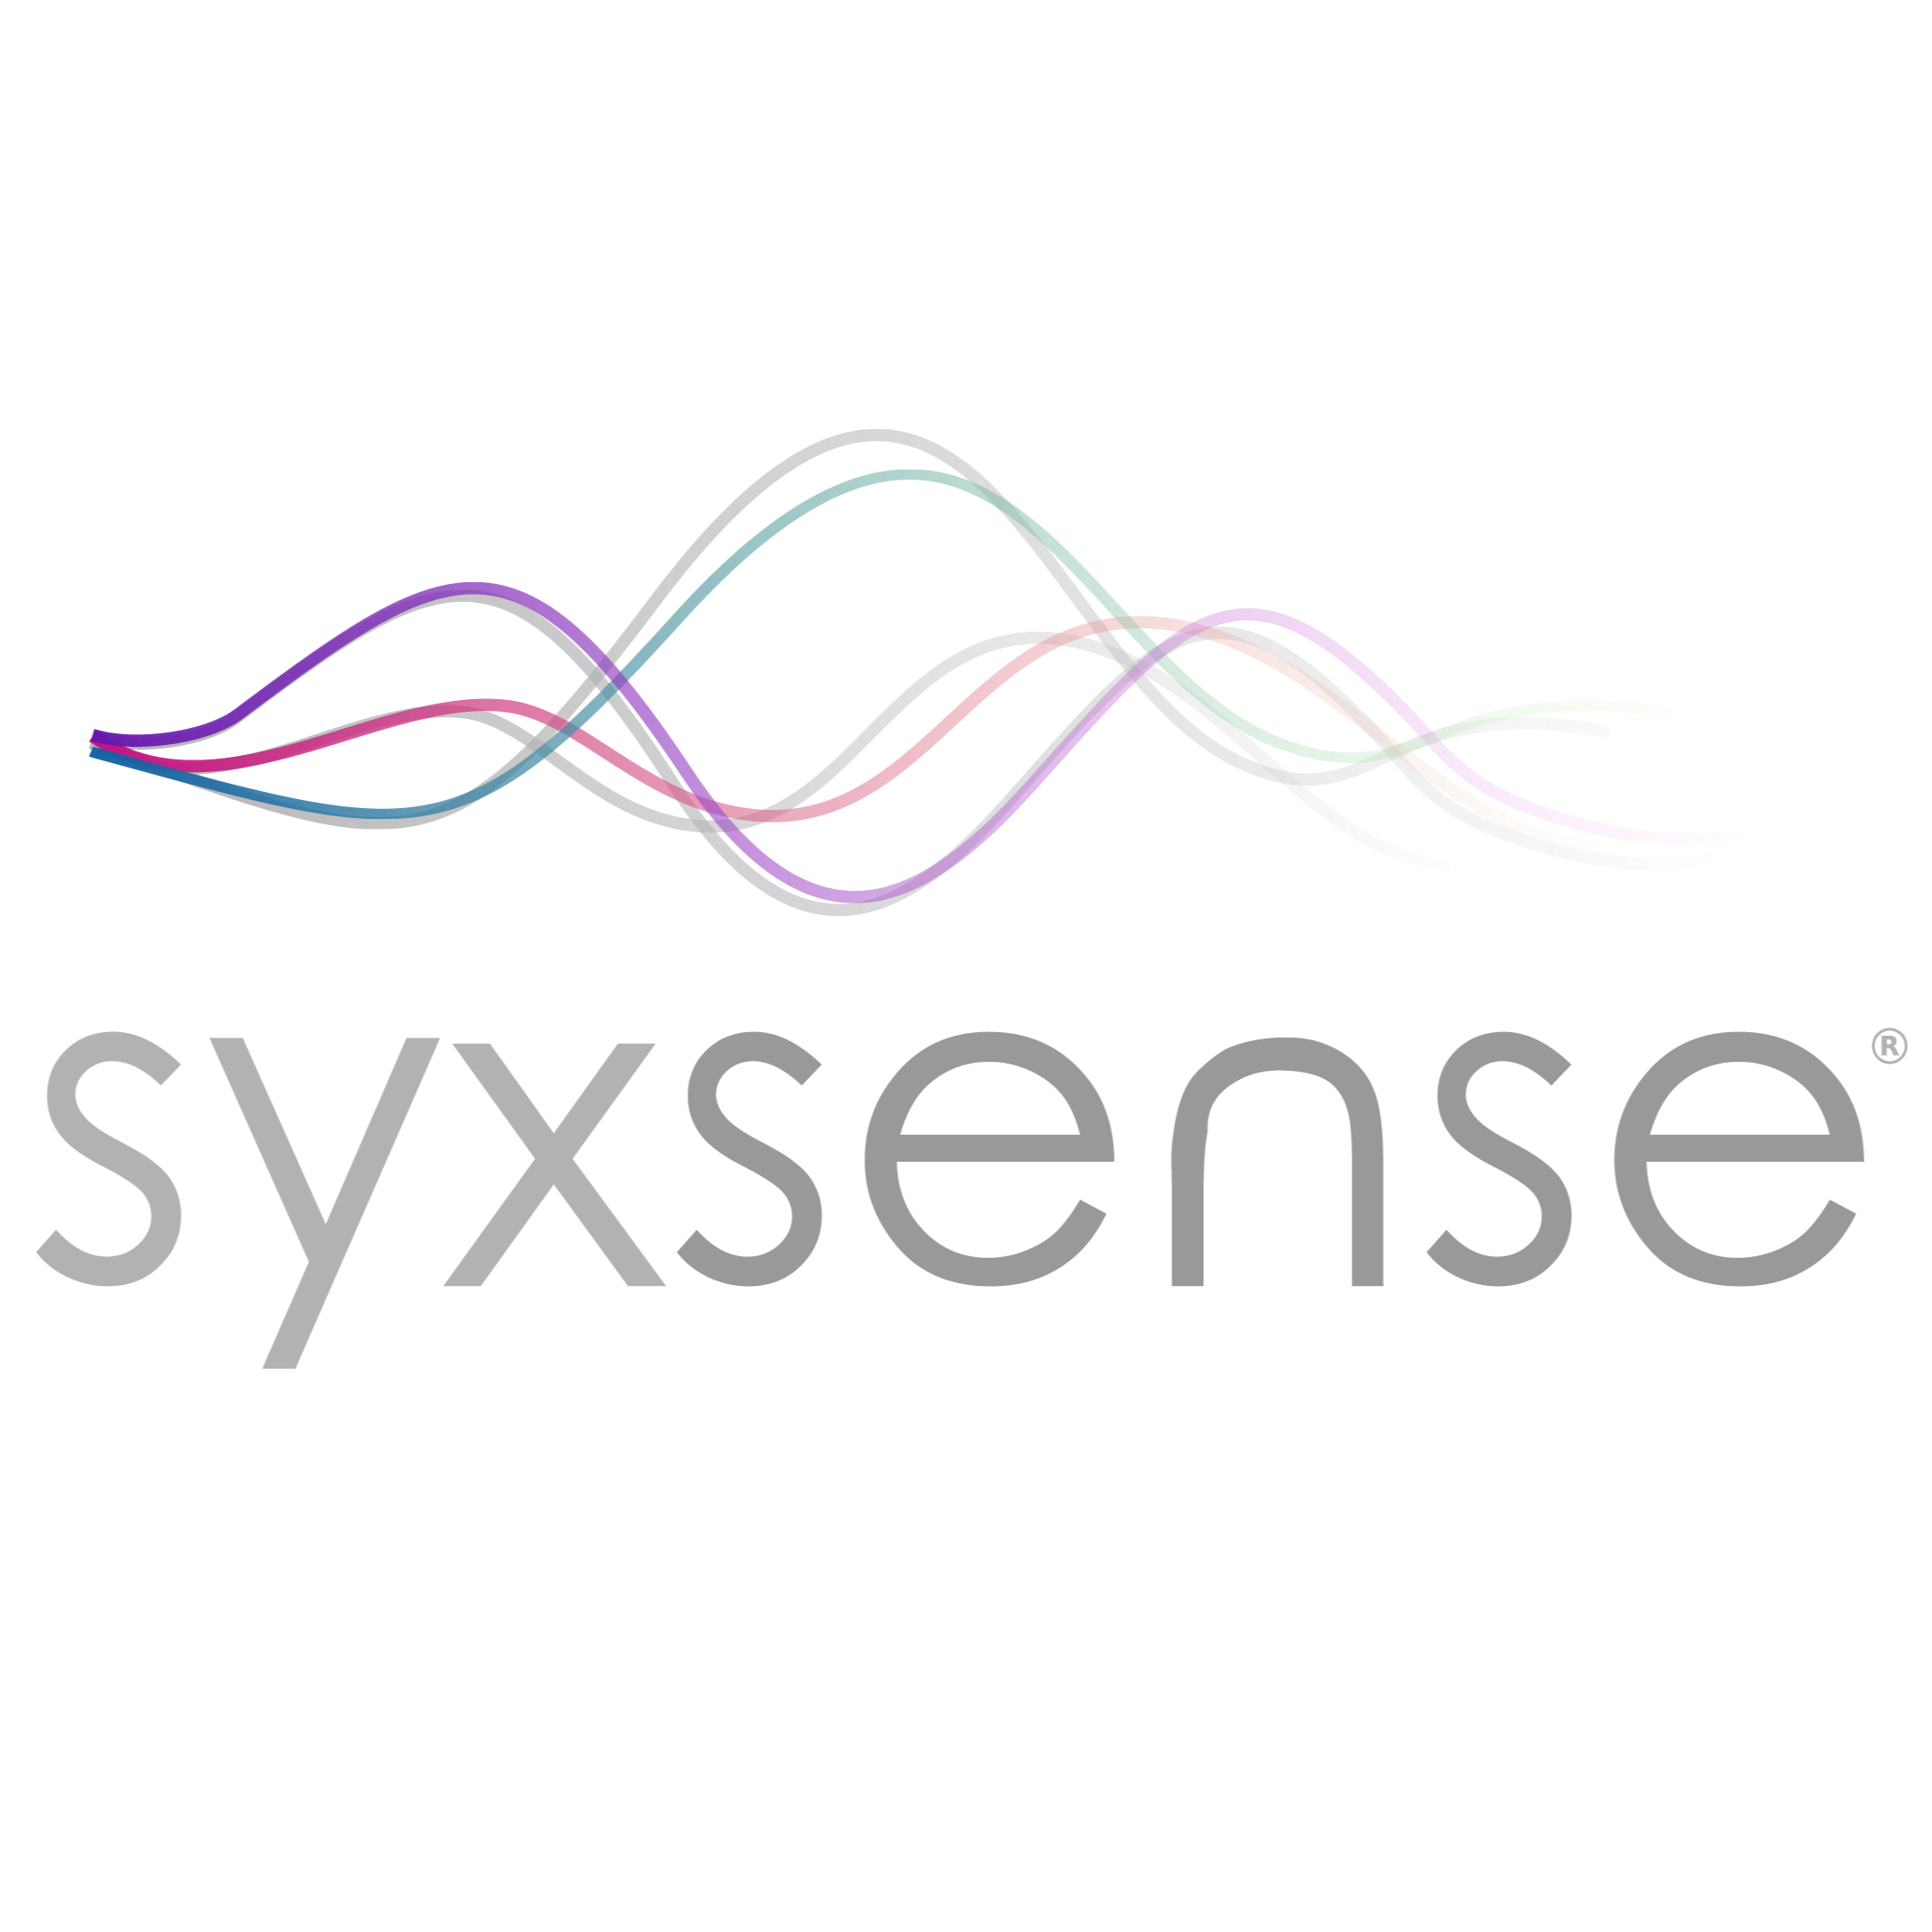 Syxsense Manage